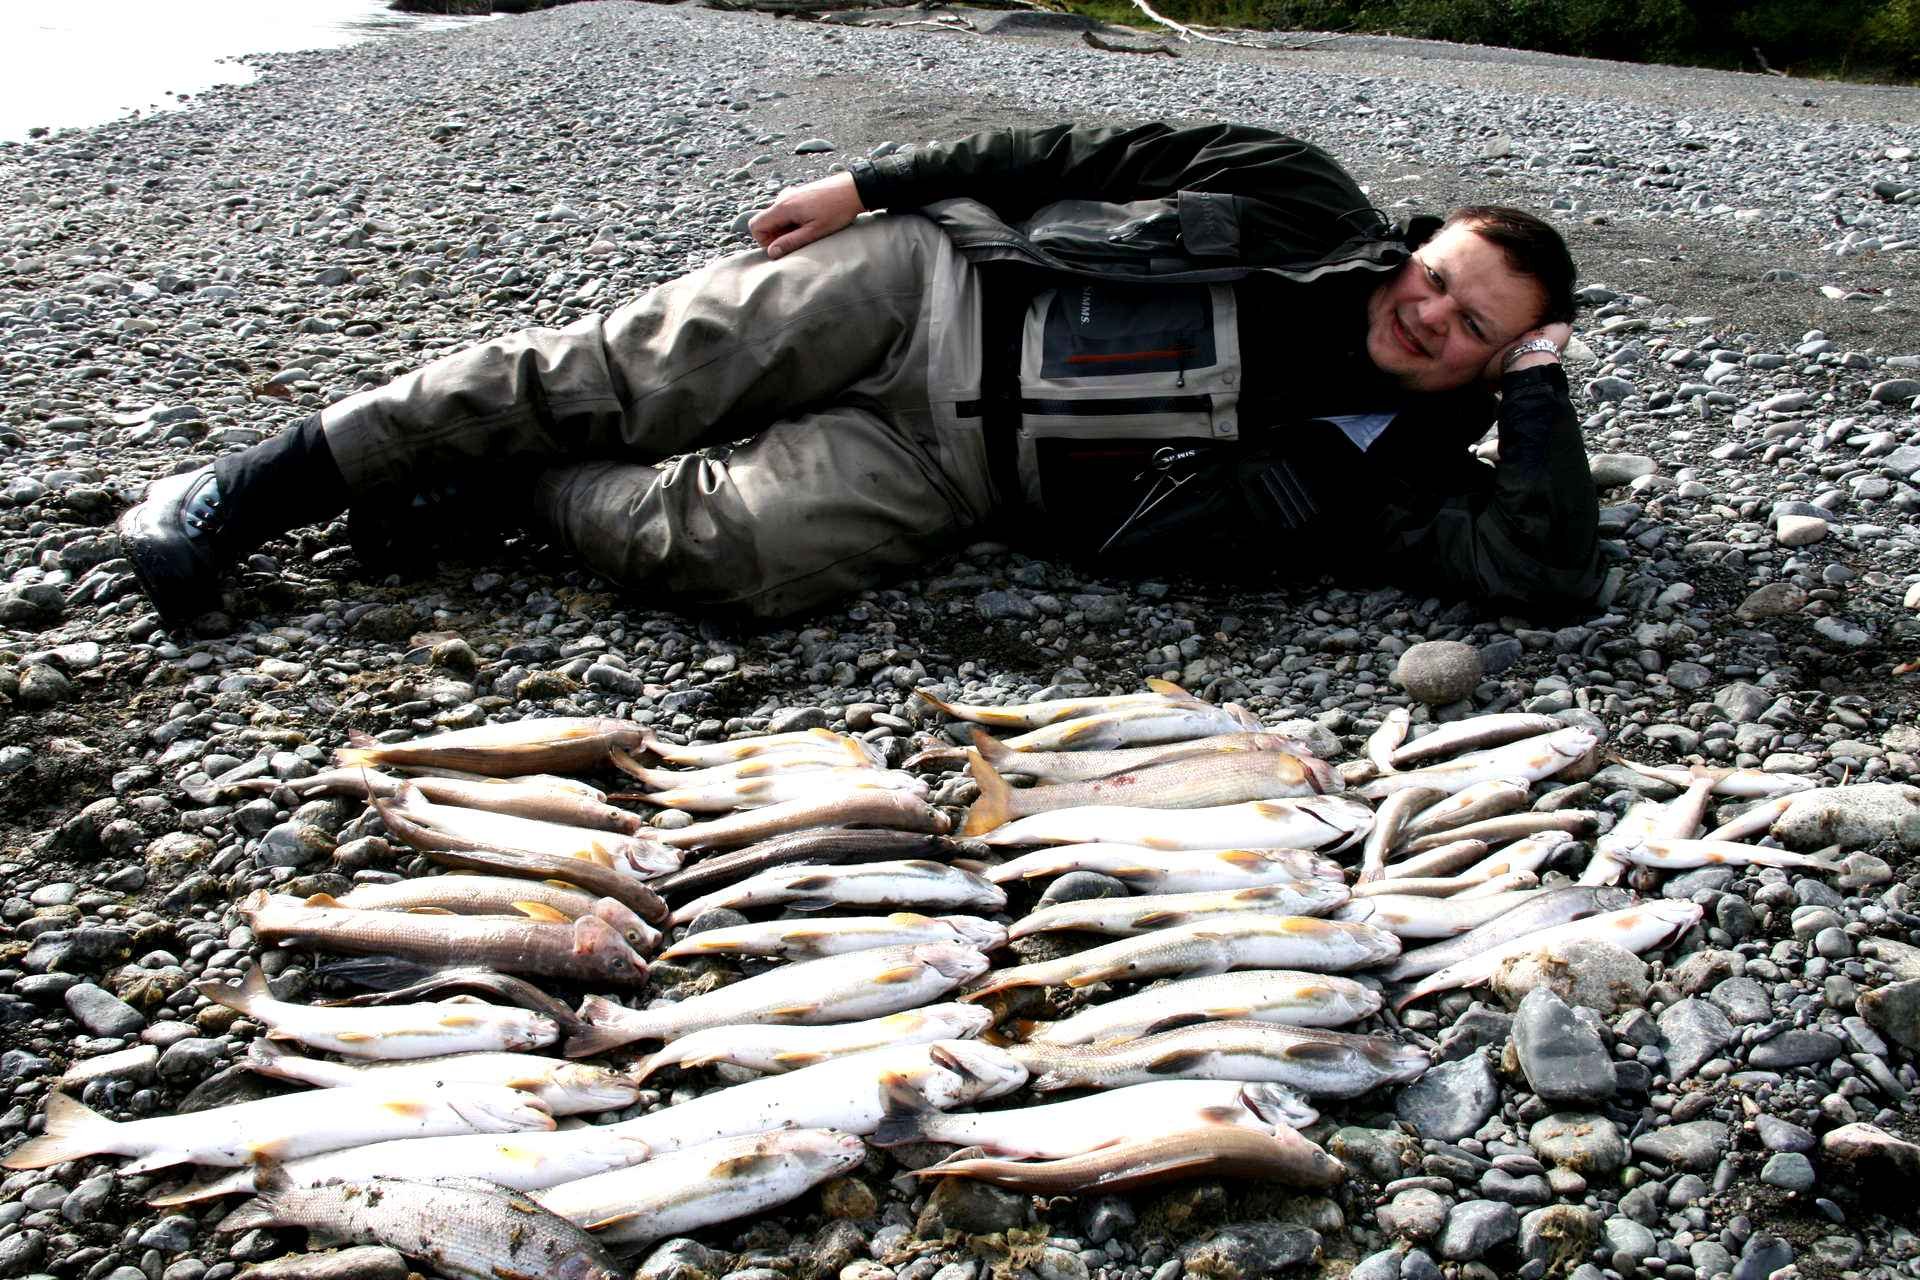 Рыбалка каждый день. Петропавловск-Камчатский рыбалка. Рыбалка на Камчатке. Охота и рыболовство. Рыба Камчатки.